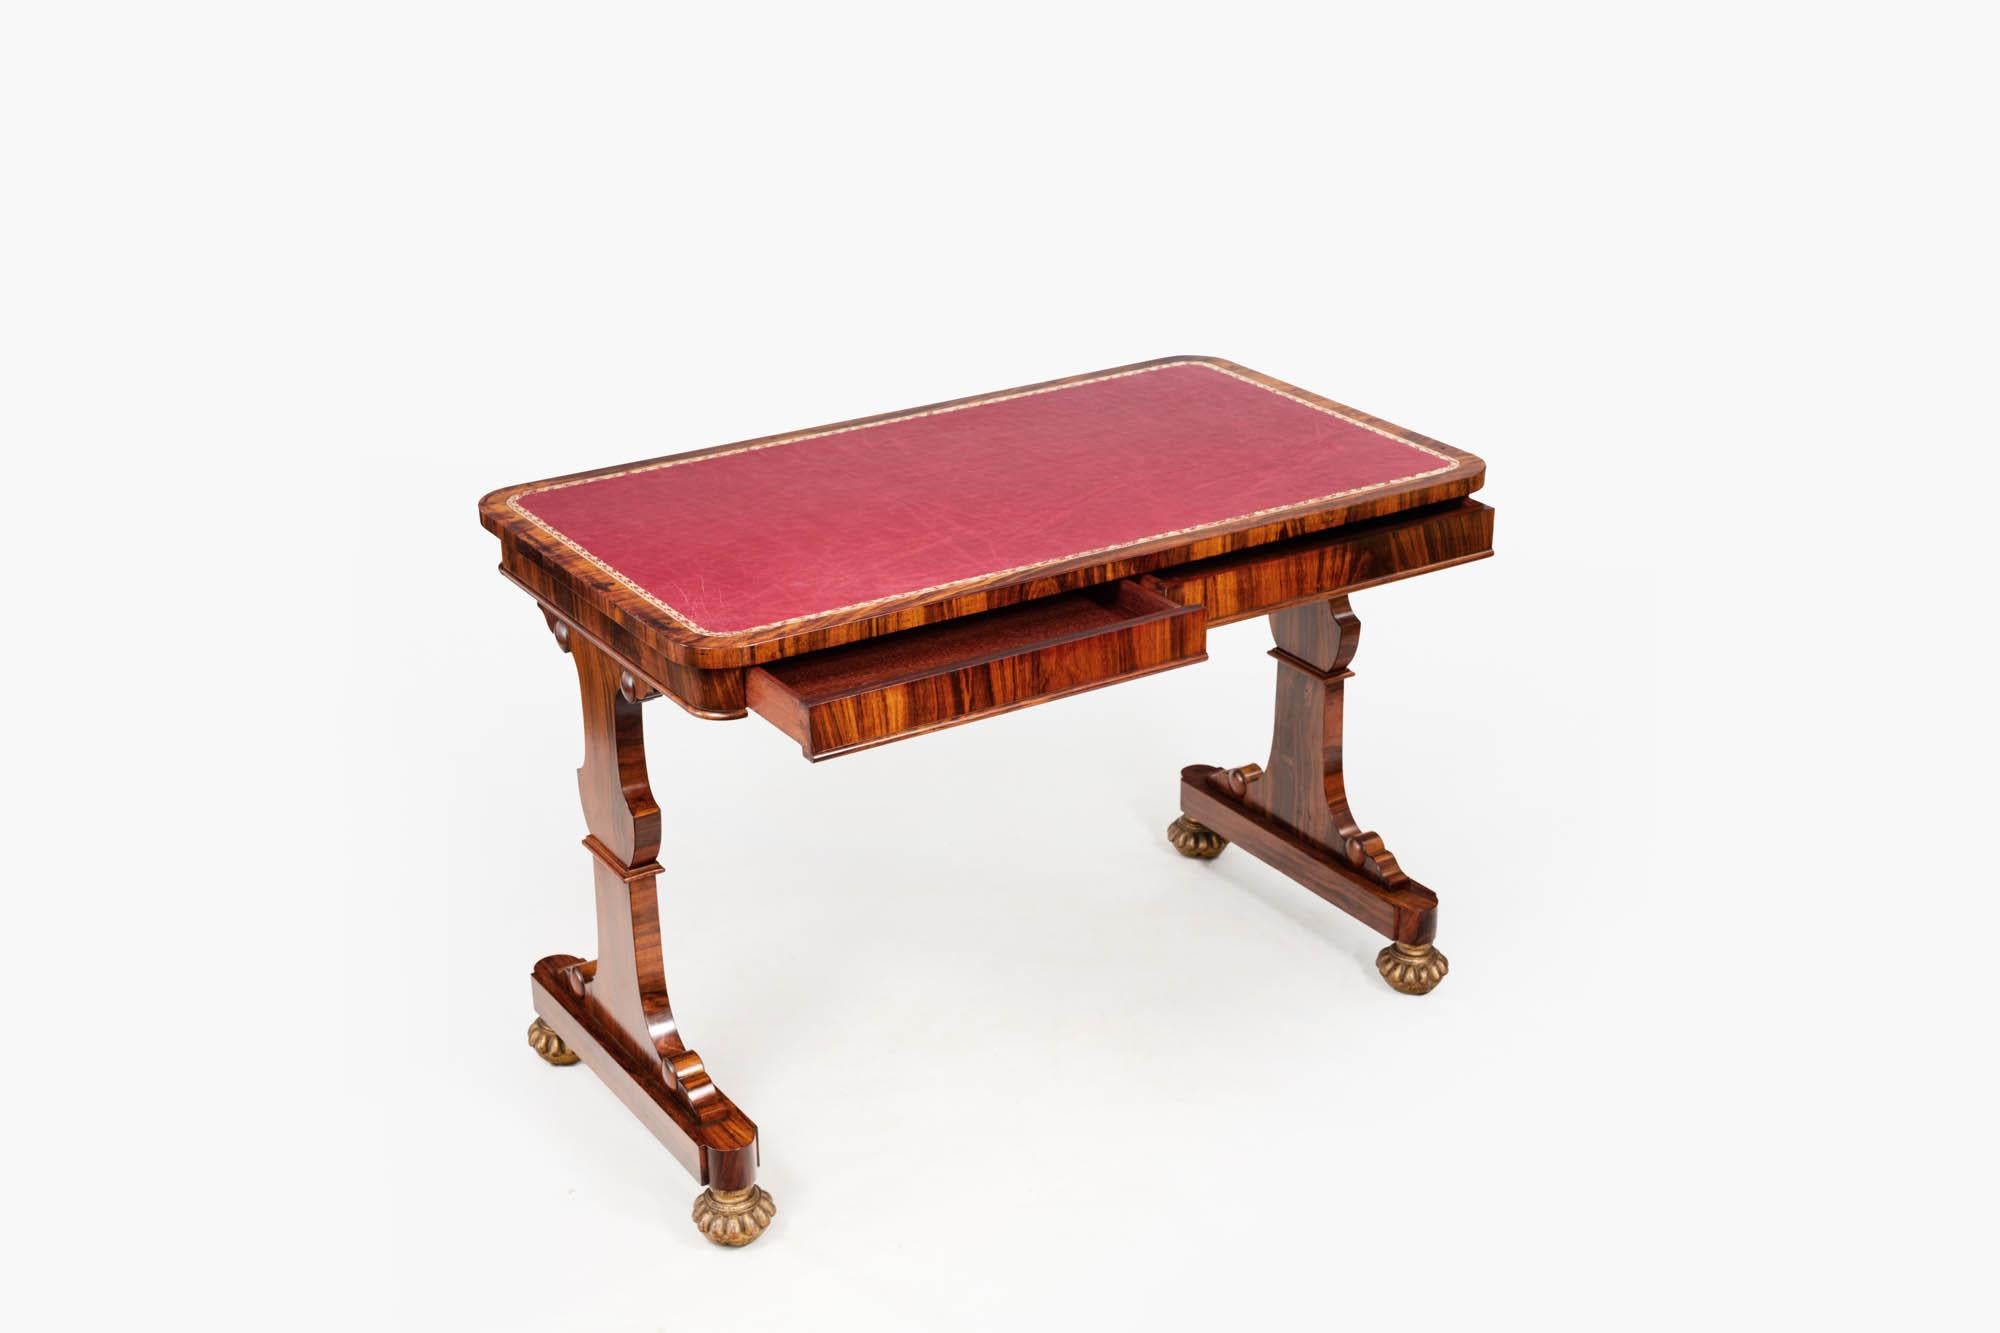 Table de bibliothèque en bois de rose William IV du XIXe siècle. Le plateau rectangulaire aux coins arrondis comporte une surface d'écriture en cuir estampé rouge et deux tiroirs déguisés. Soutenue par deux montants sculptés, cette pièce se termine